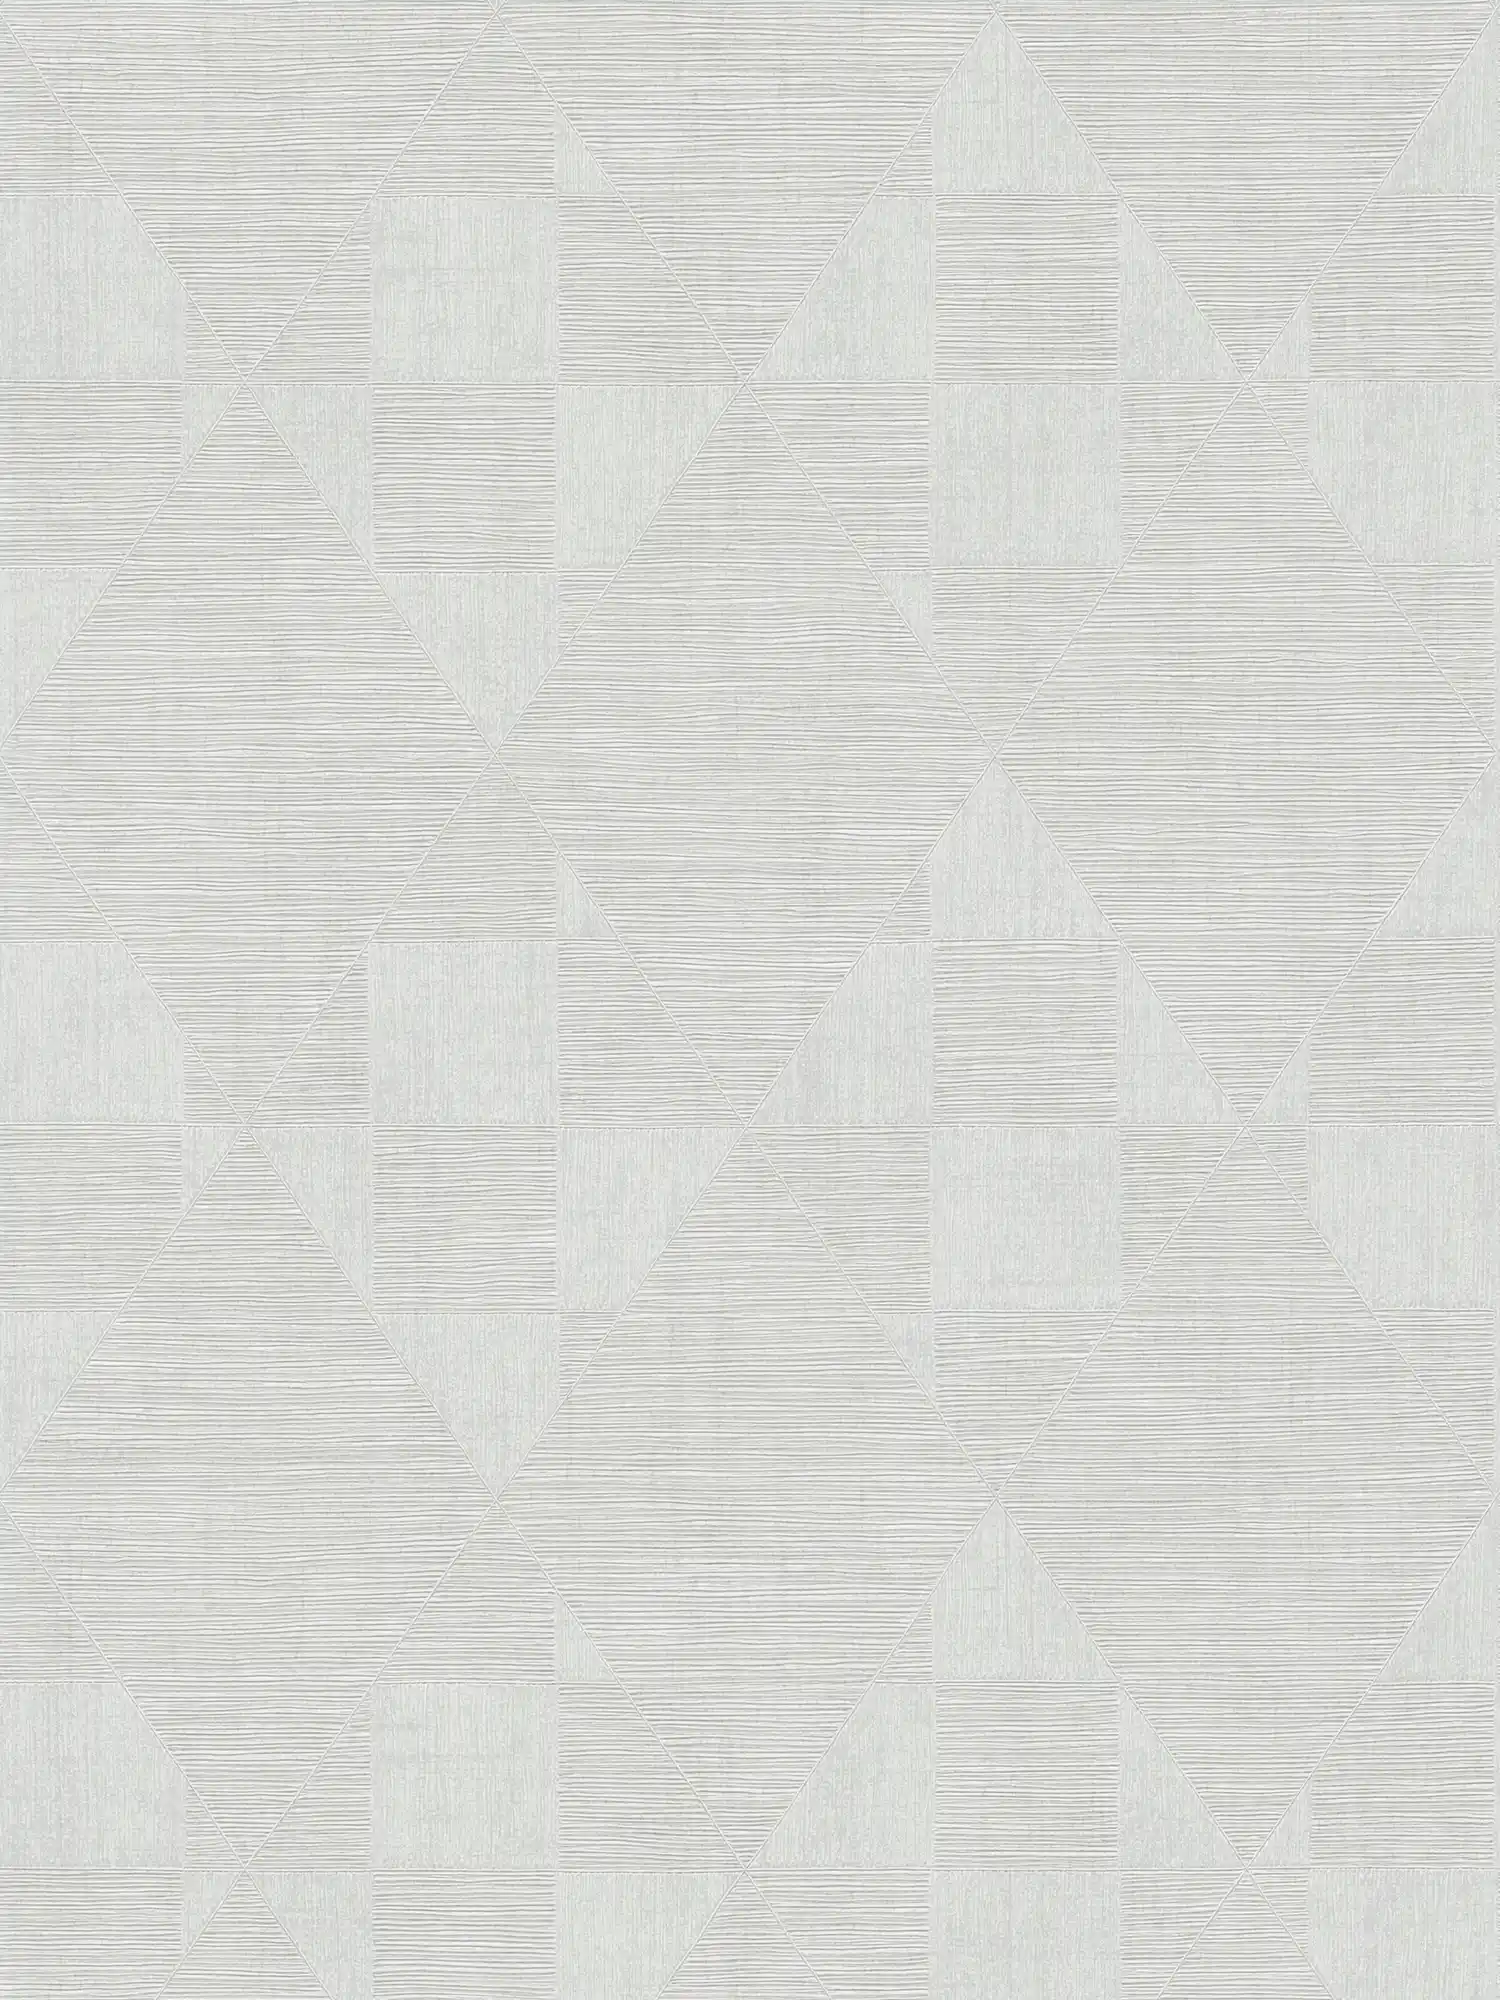 Retro wallpaper with metallic texture design - grey, white
